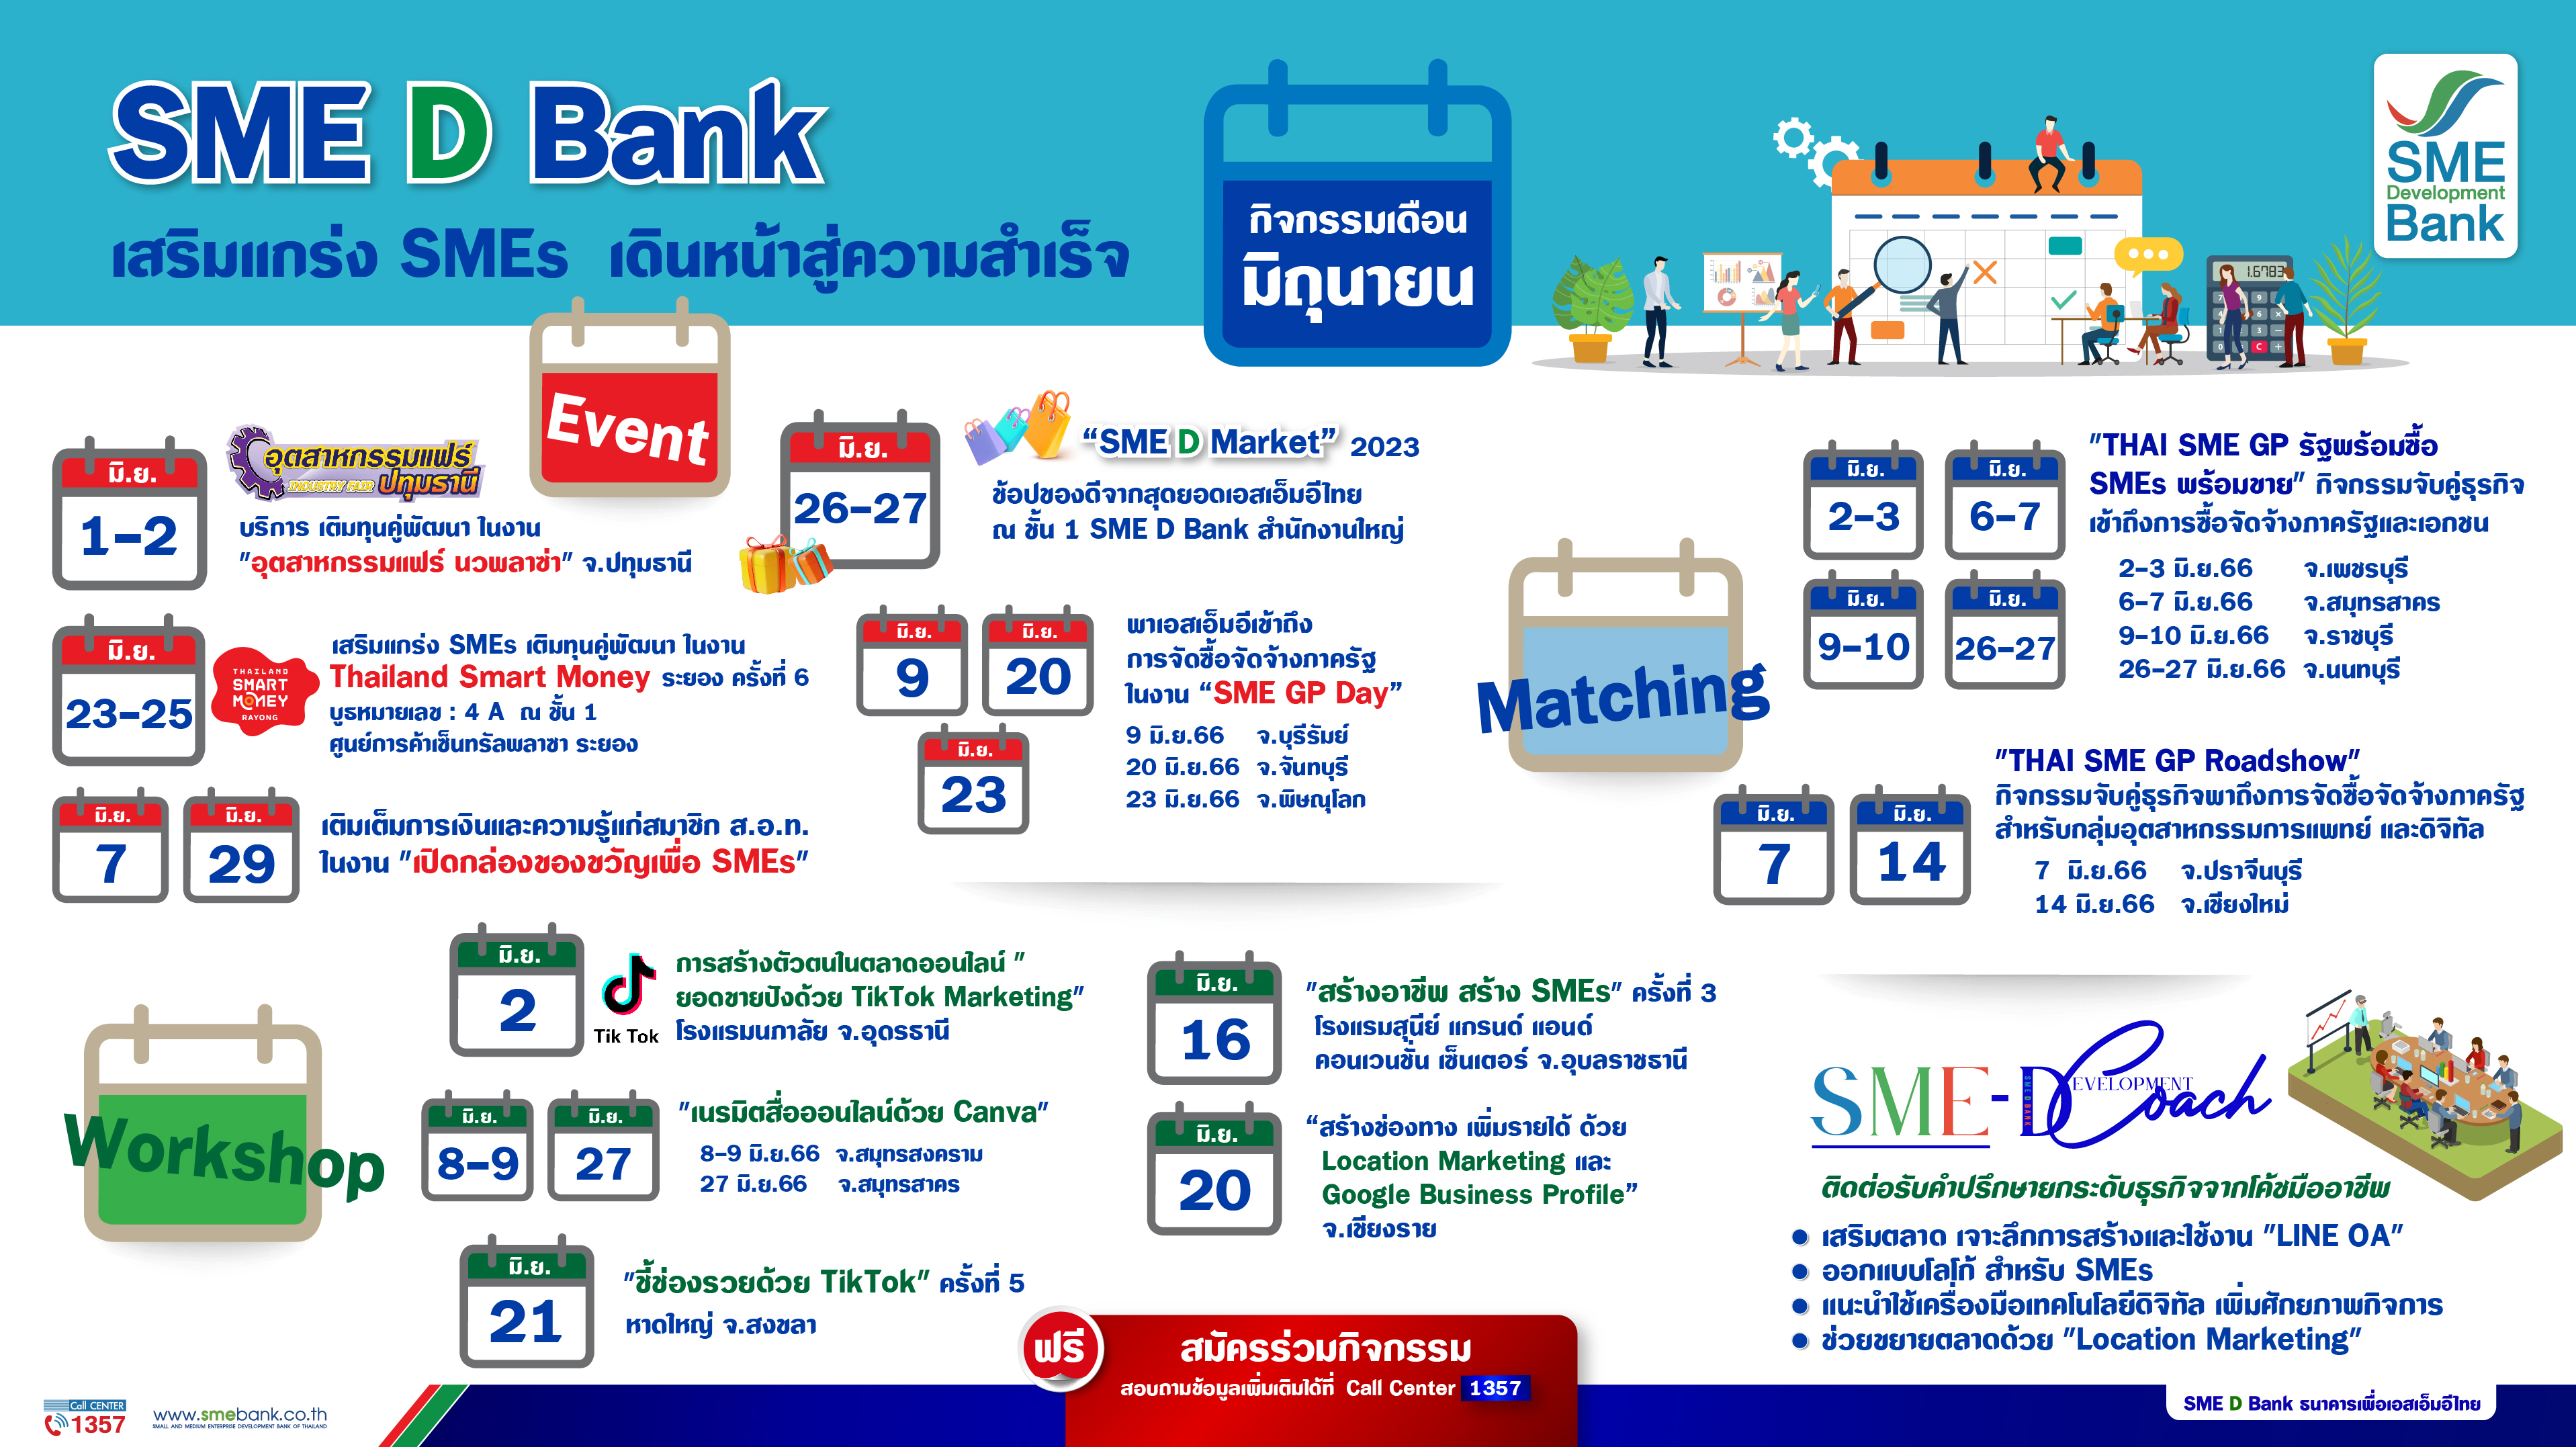 SME D Bank ยืนหนึ่งพัฒนาเอสเอ็มอีไทย ยกทัพ 13 กิจกรรมเสริมแกร่ง พร้อมเสิร์ฟตลอดเดือน มิ.ย. 66